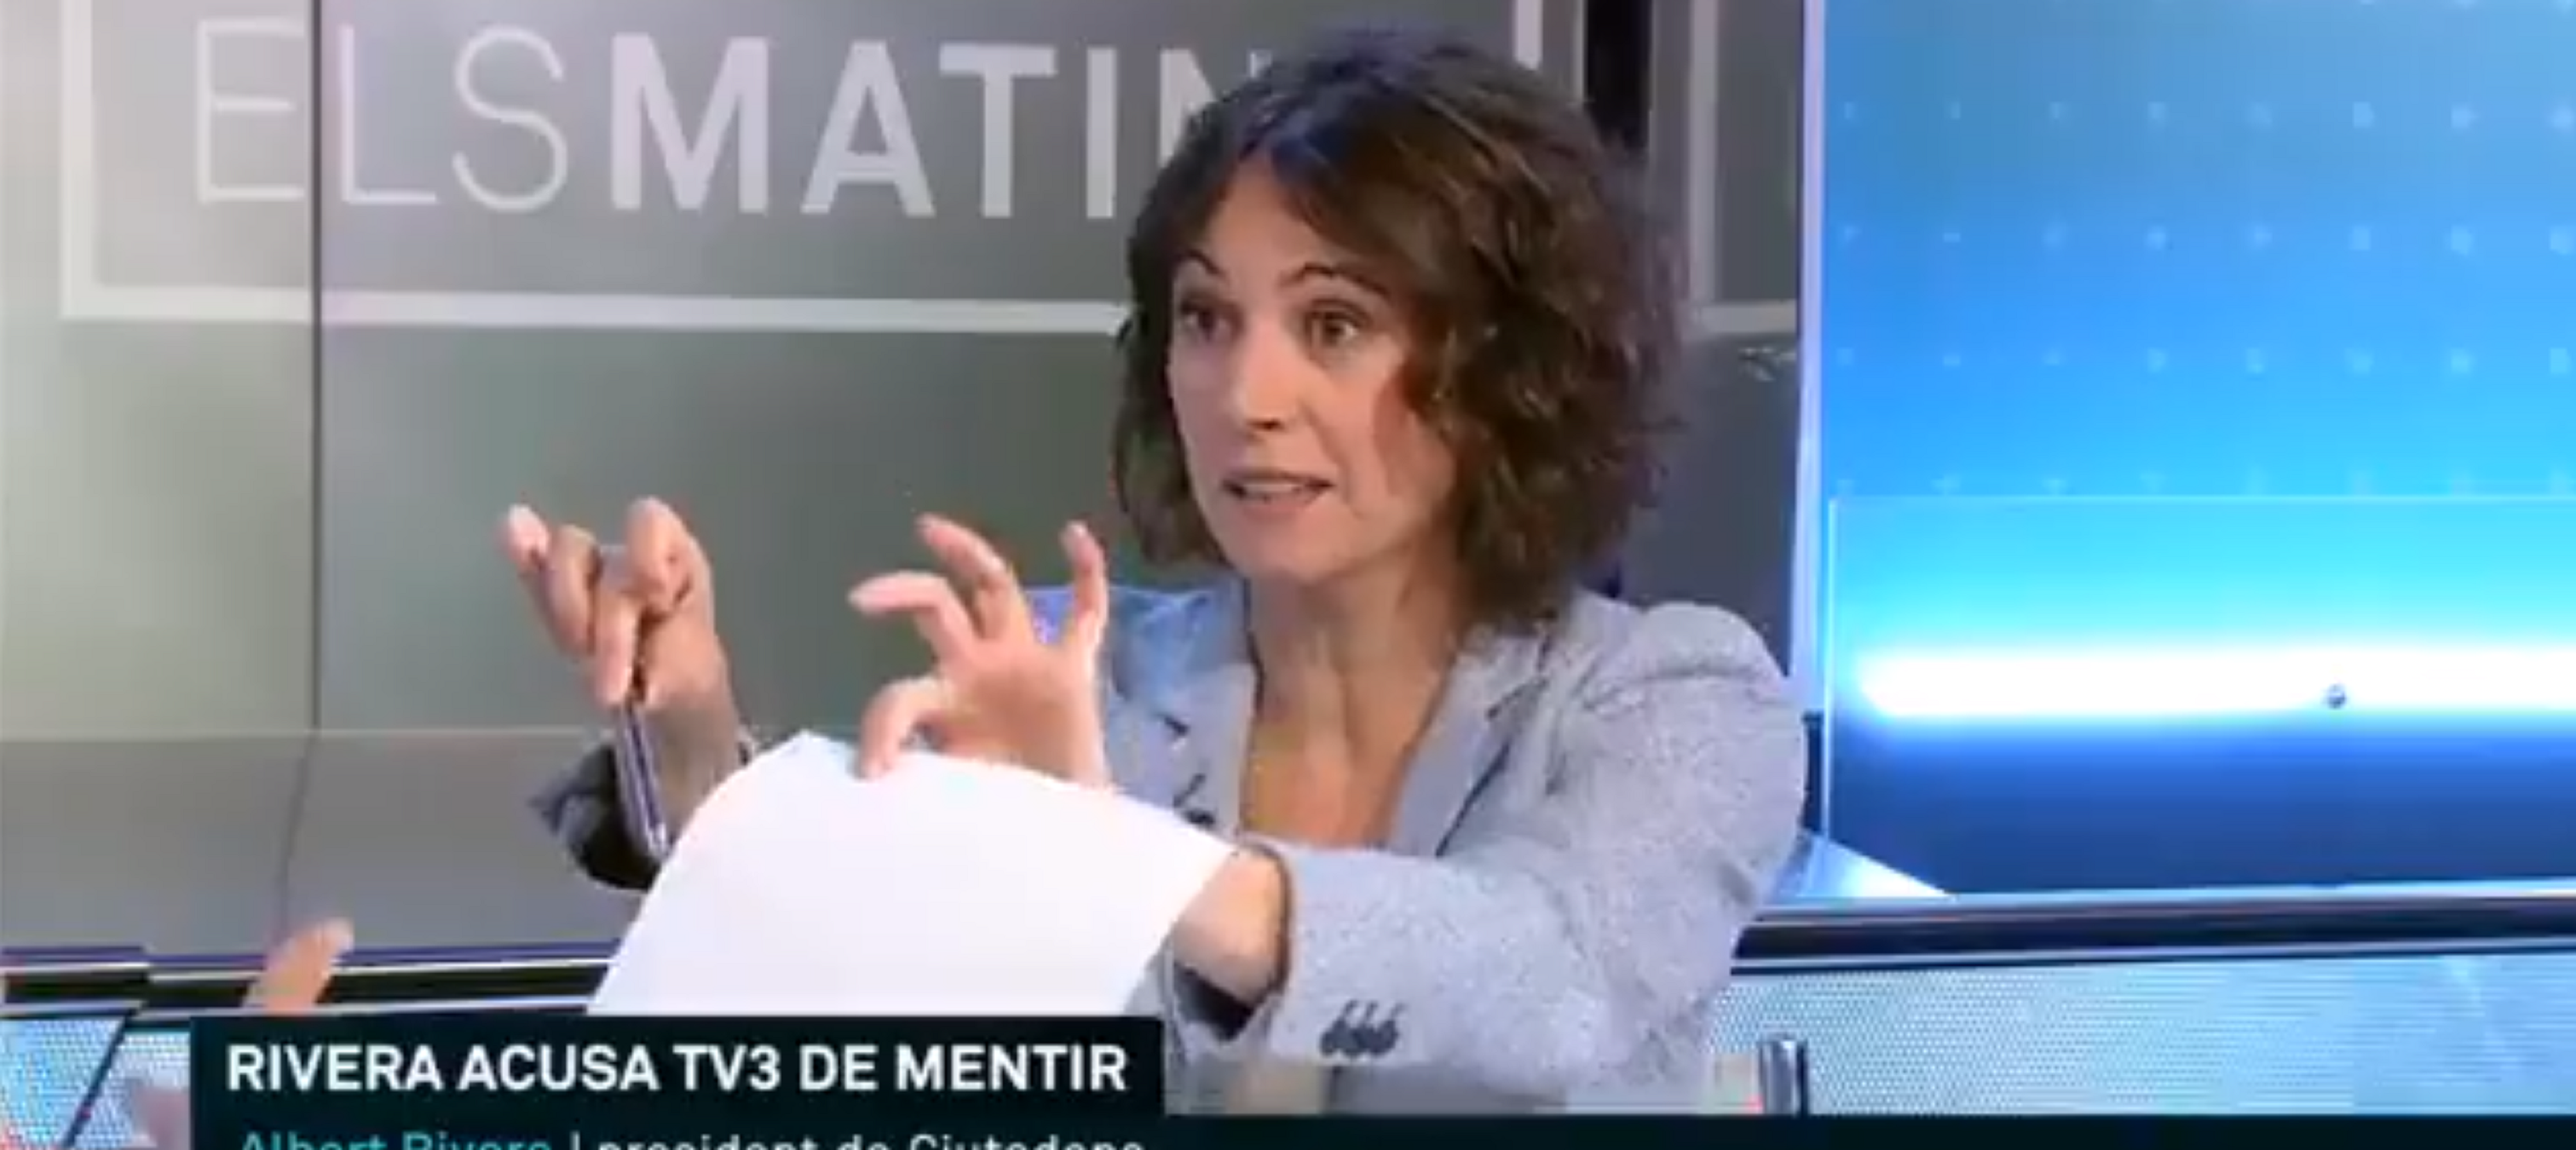 Indignació per l'anunci que han fet a TV3 d'Els Matins': "Vergonya, sembleu T5"